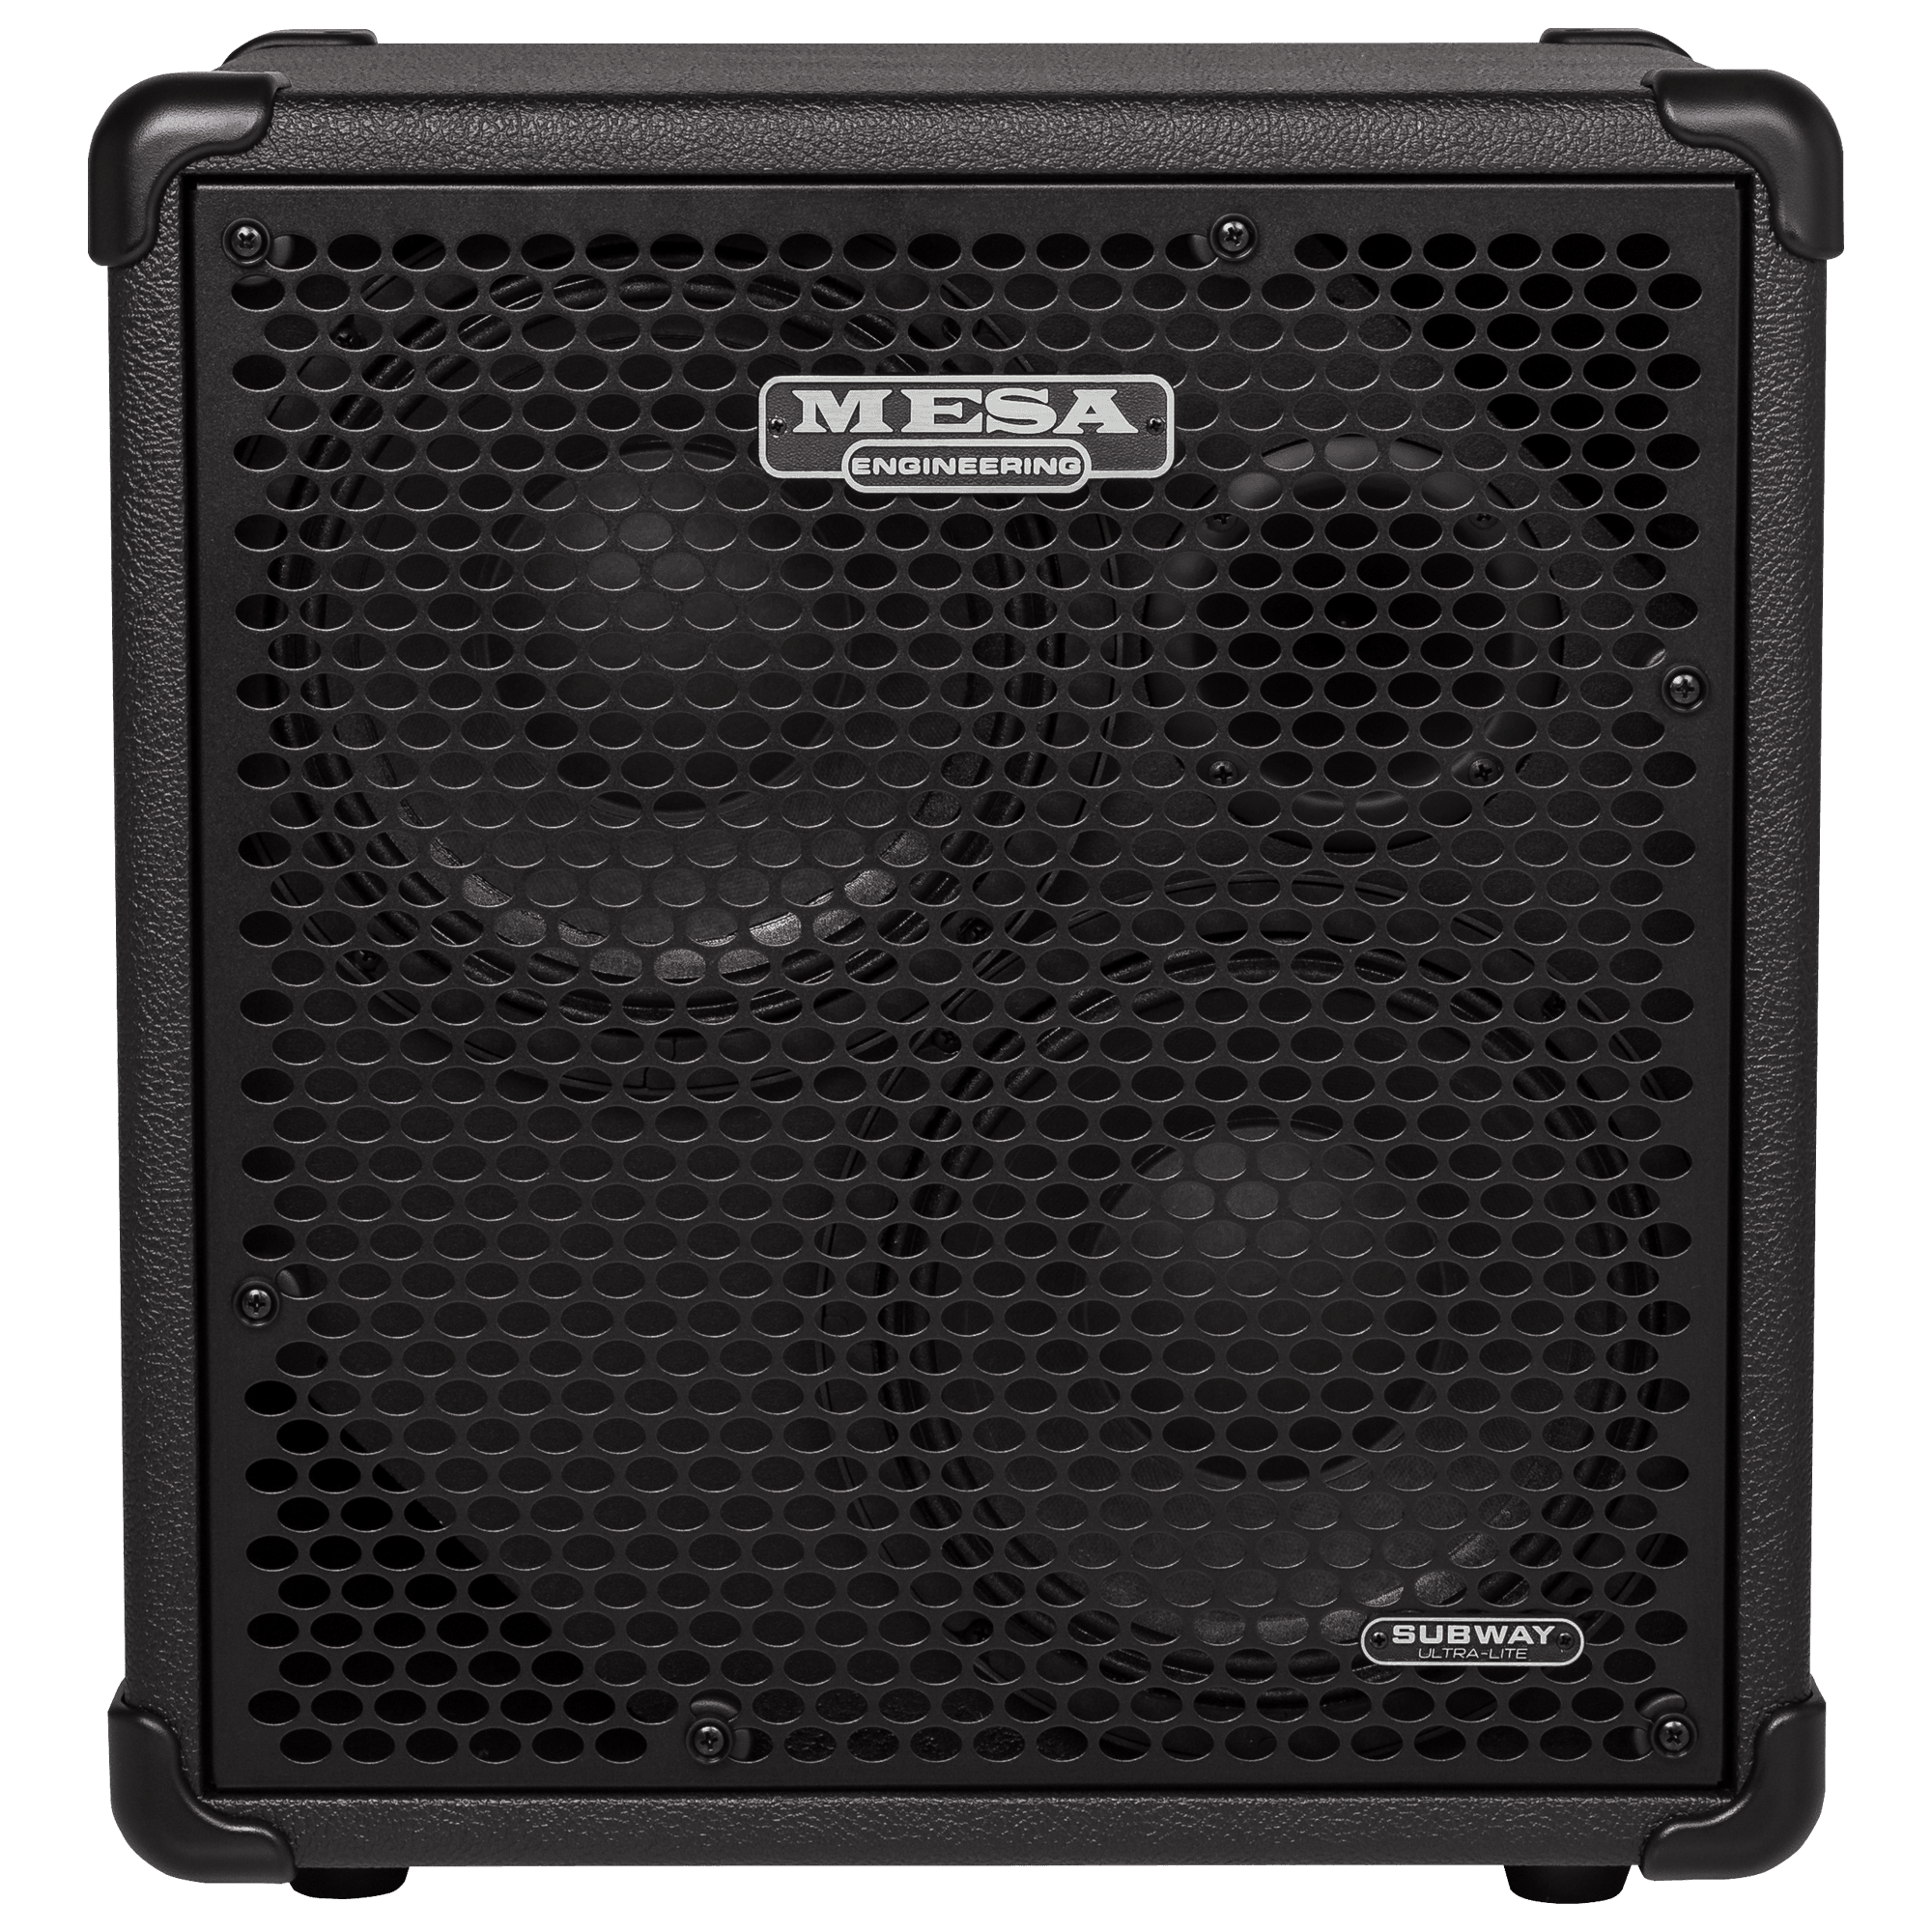 Басовый кабинет. Басовый кабинет Mesa Boogie 1x12 Walkabout. Басовый кабинет Меса буги 1квт. Mesa Boogie Bass Cabinet. Басовый кабинет Engl e115b.